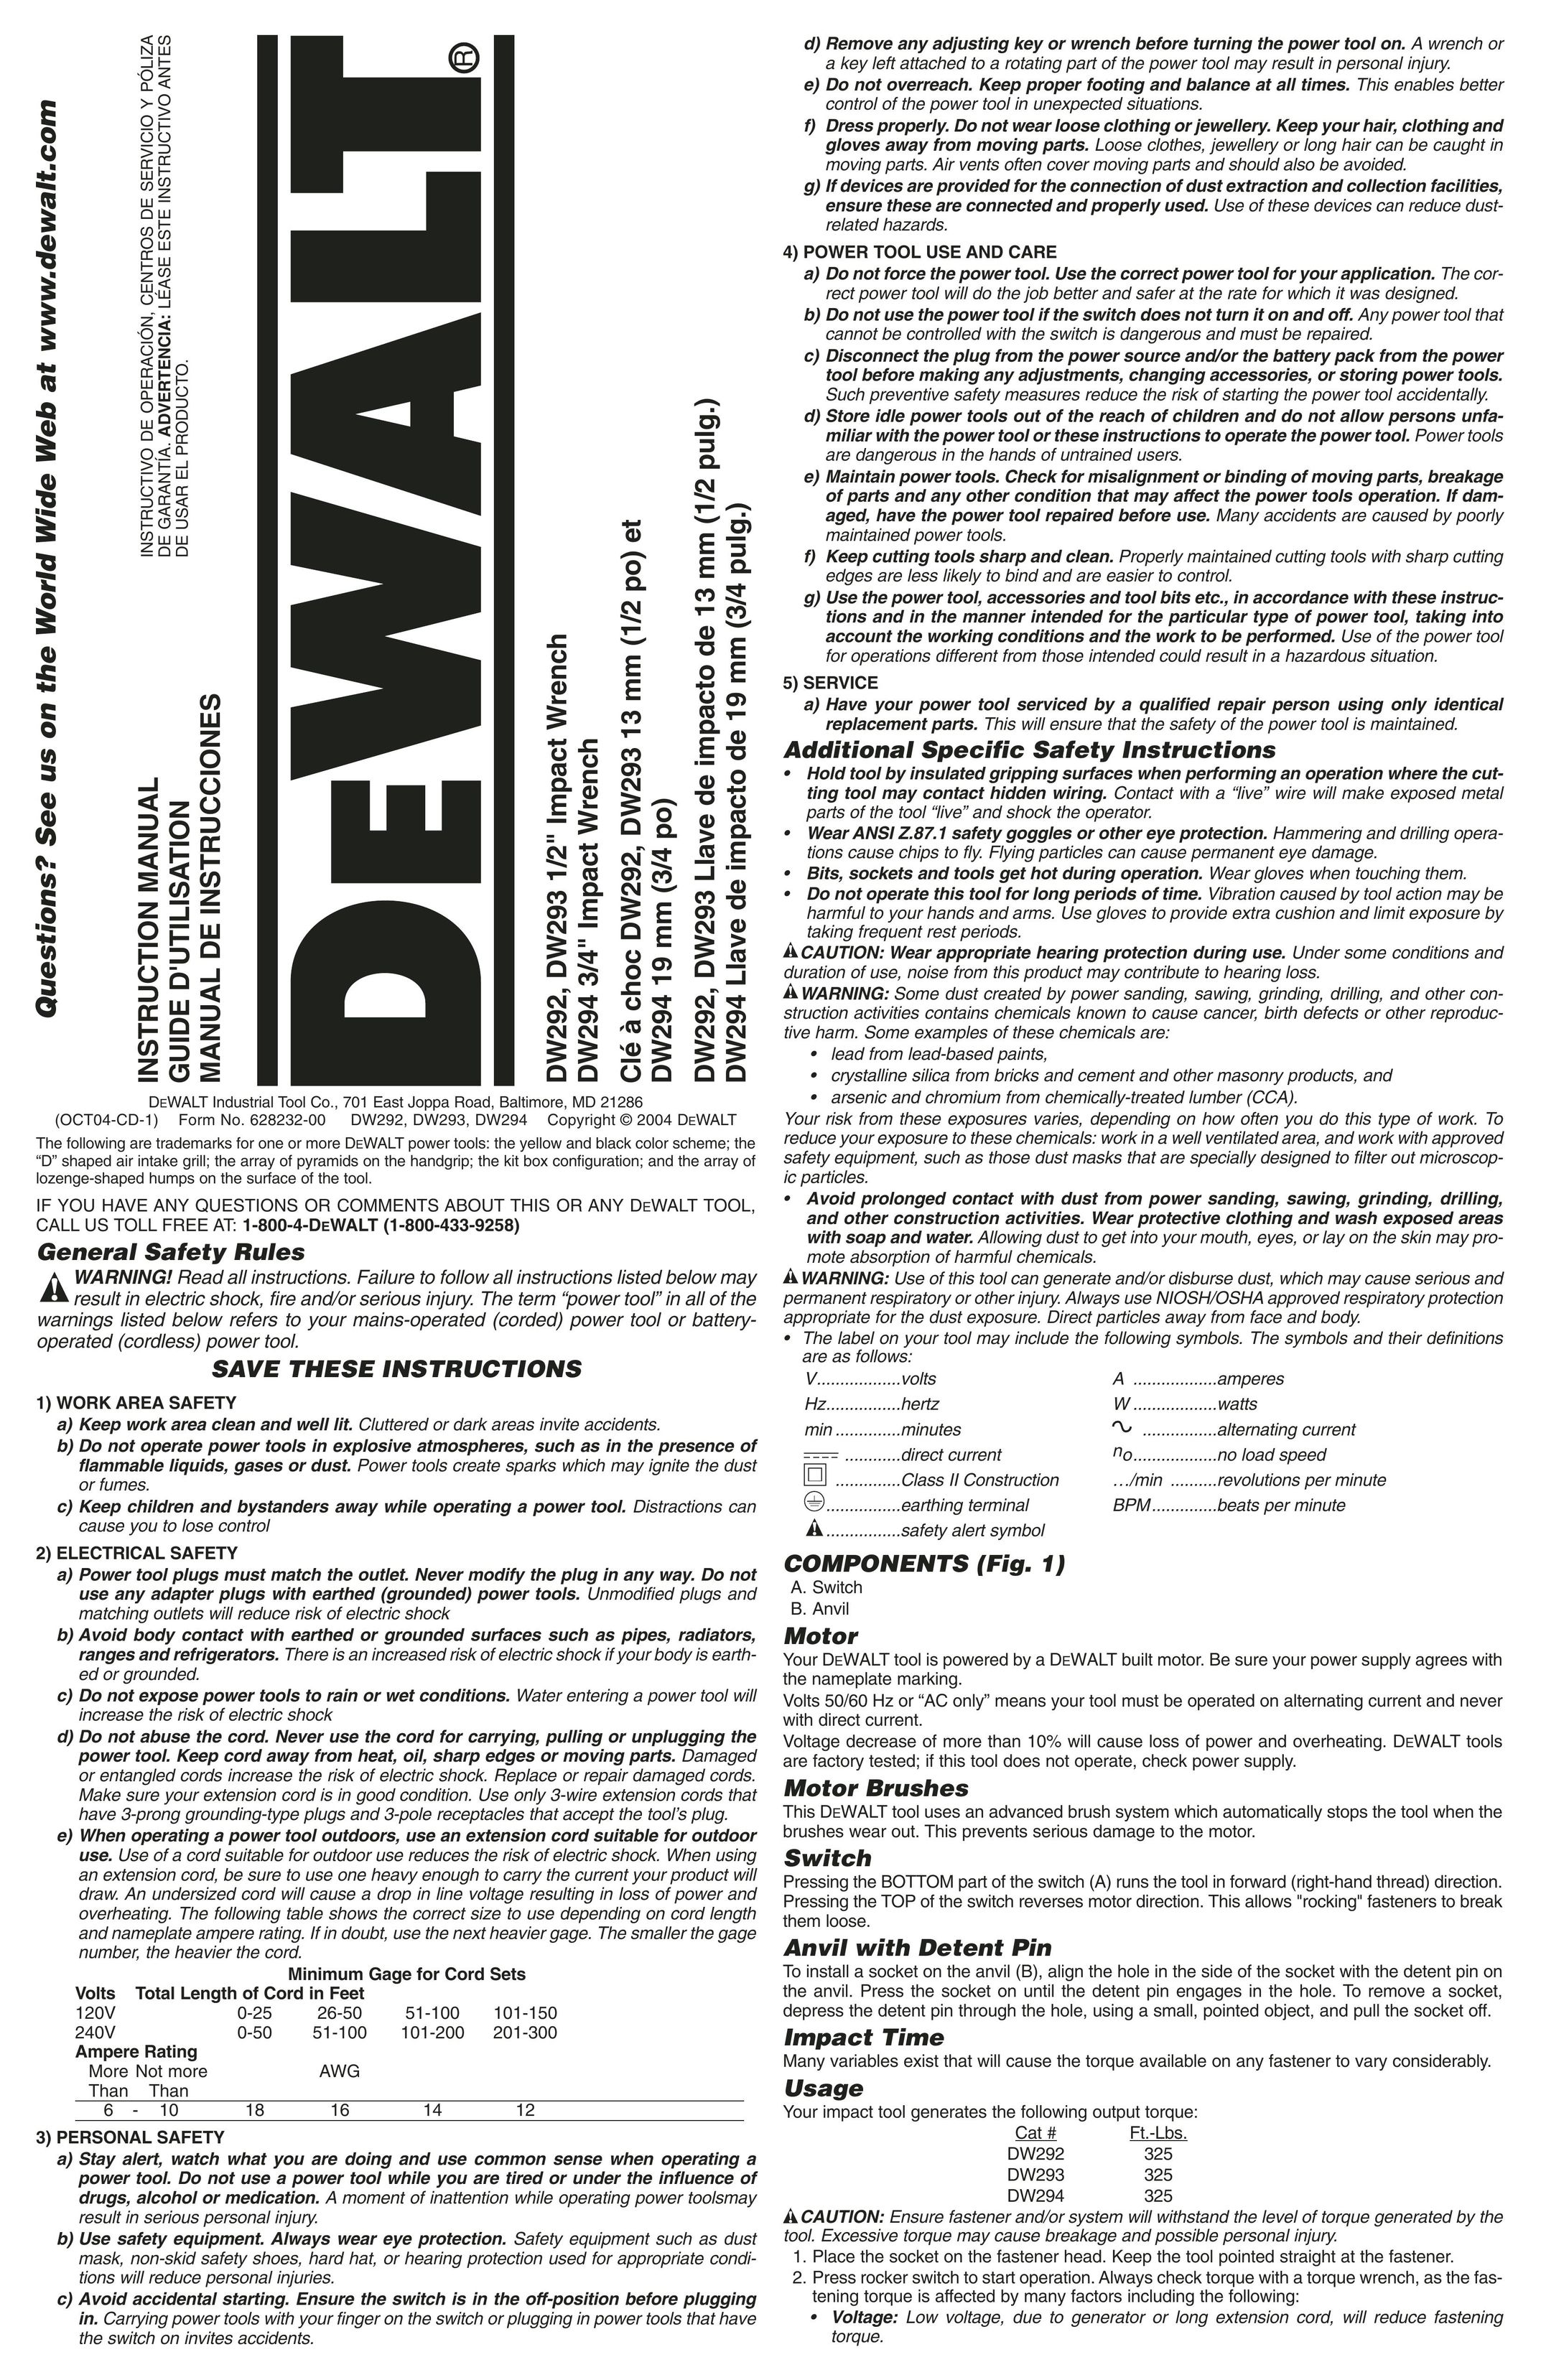 DeWalt DW294 Impact Driver User Manual